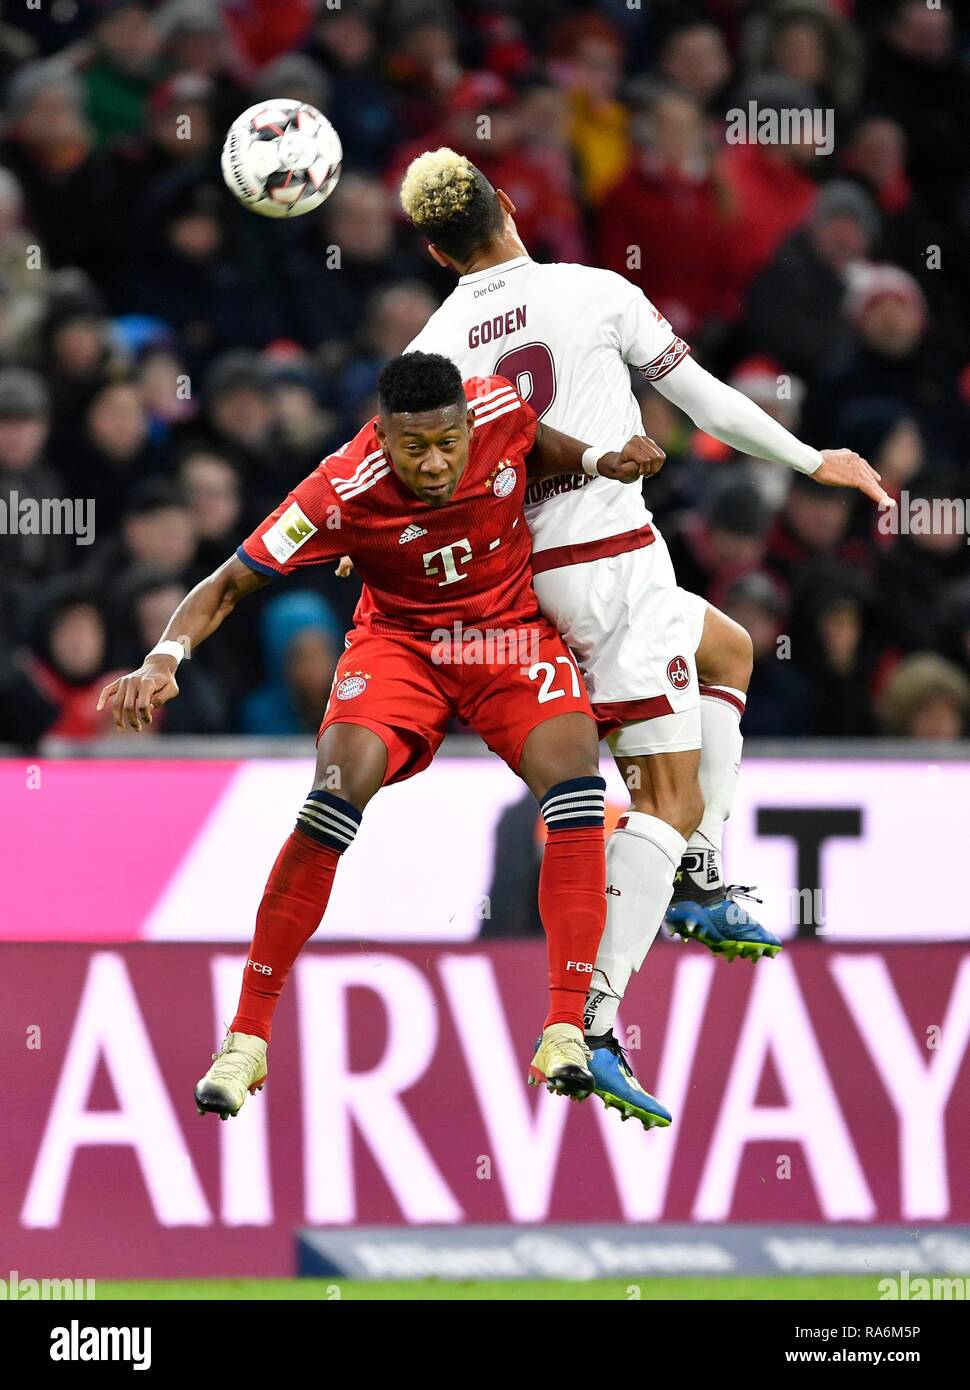 Header duel, duel, David Alaba FC Bayern Munich against Kevin Goden 1st FC Nuremberg, Allianz Arena, Munich, Bavaria, Germany Stock Photo